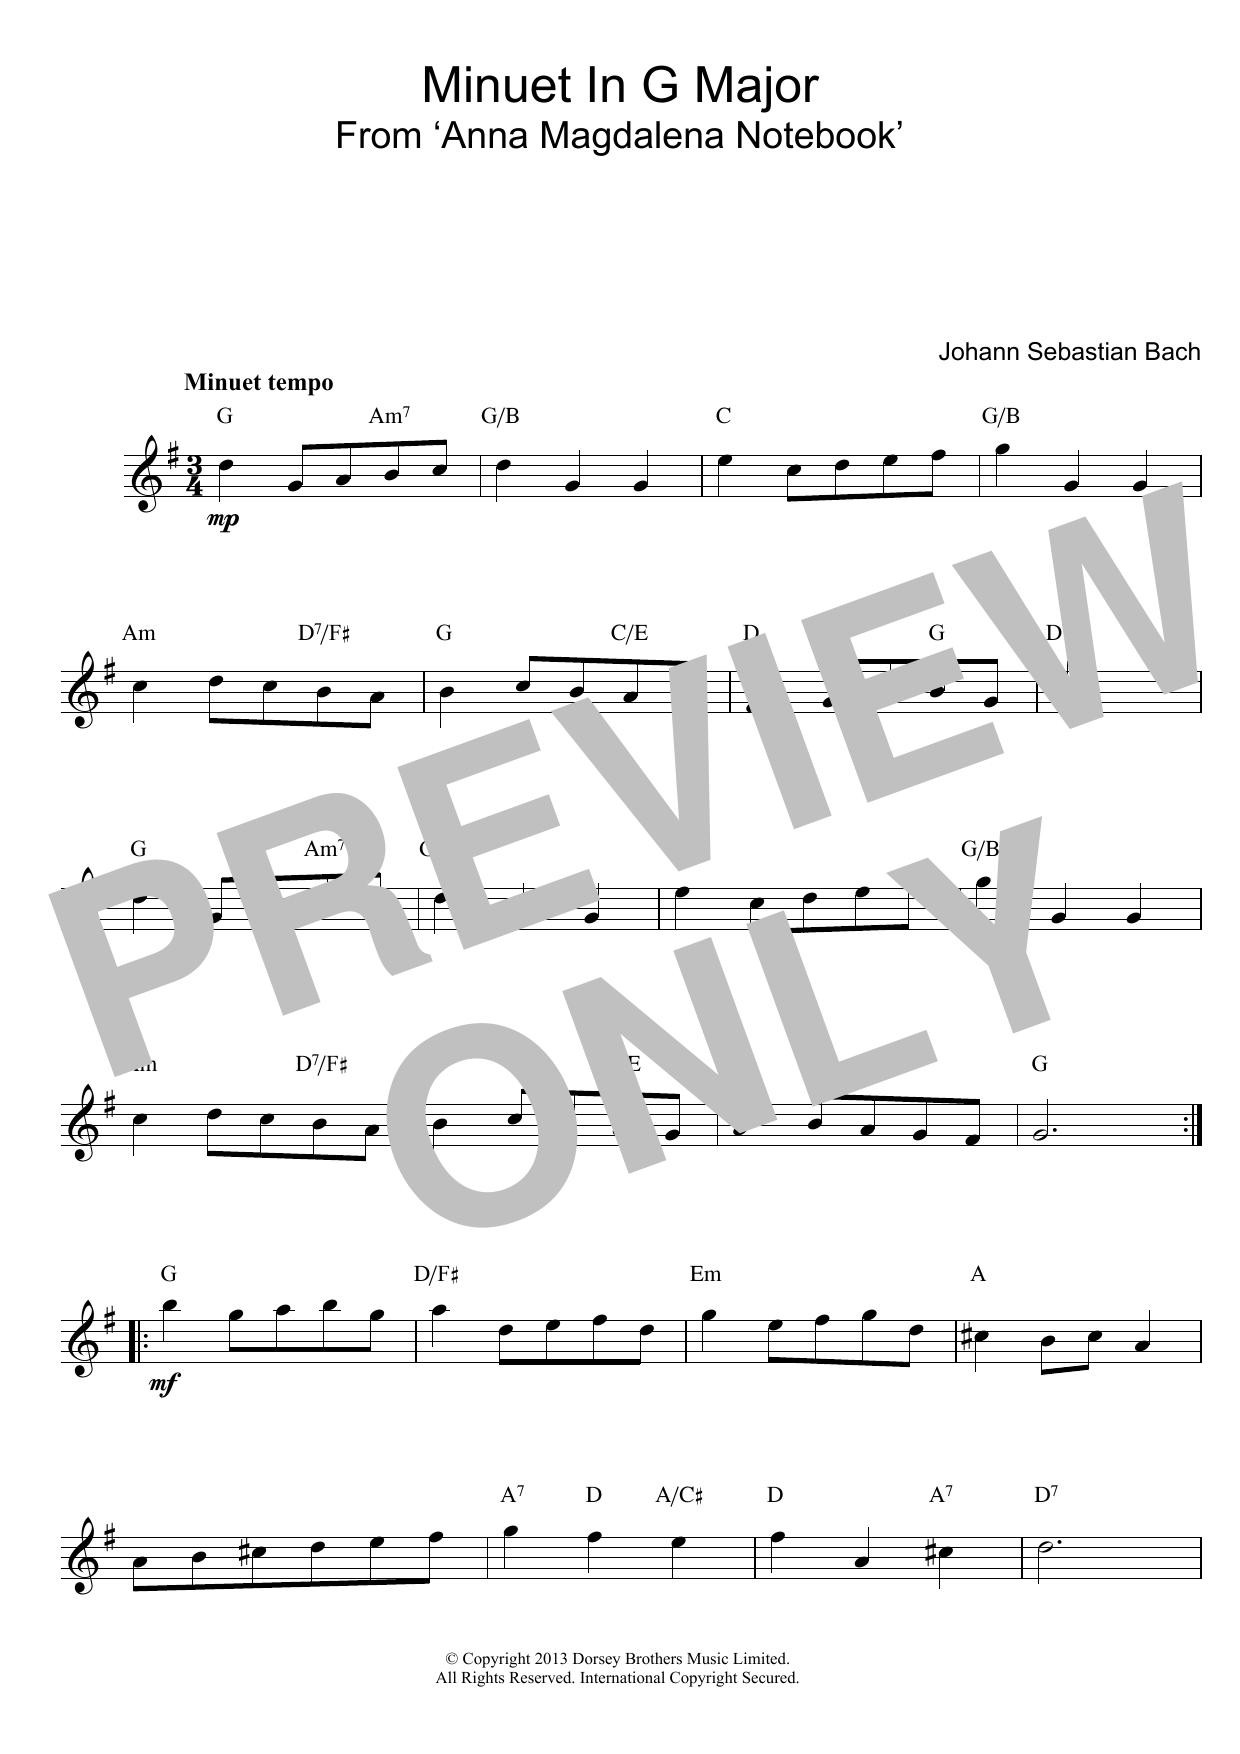 Johann Sebastian Bach Minuet In G Sheet Music Notes & Chords for Guitar Ensemble - Download or Print PDF